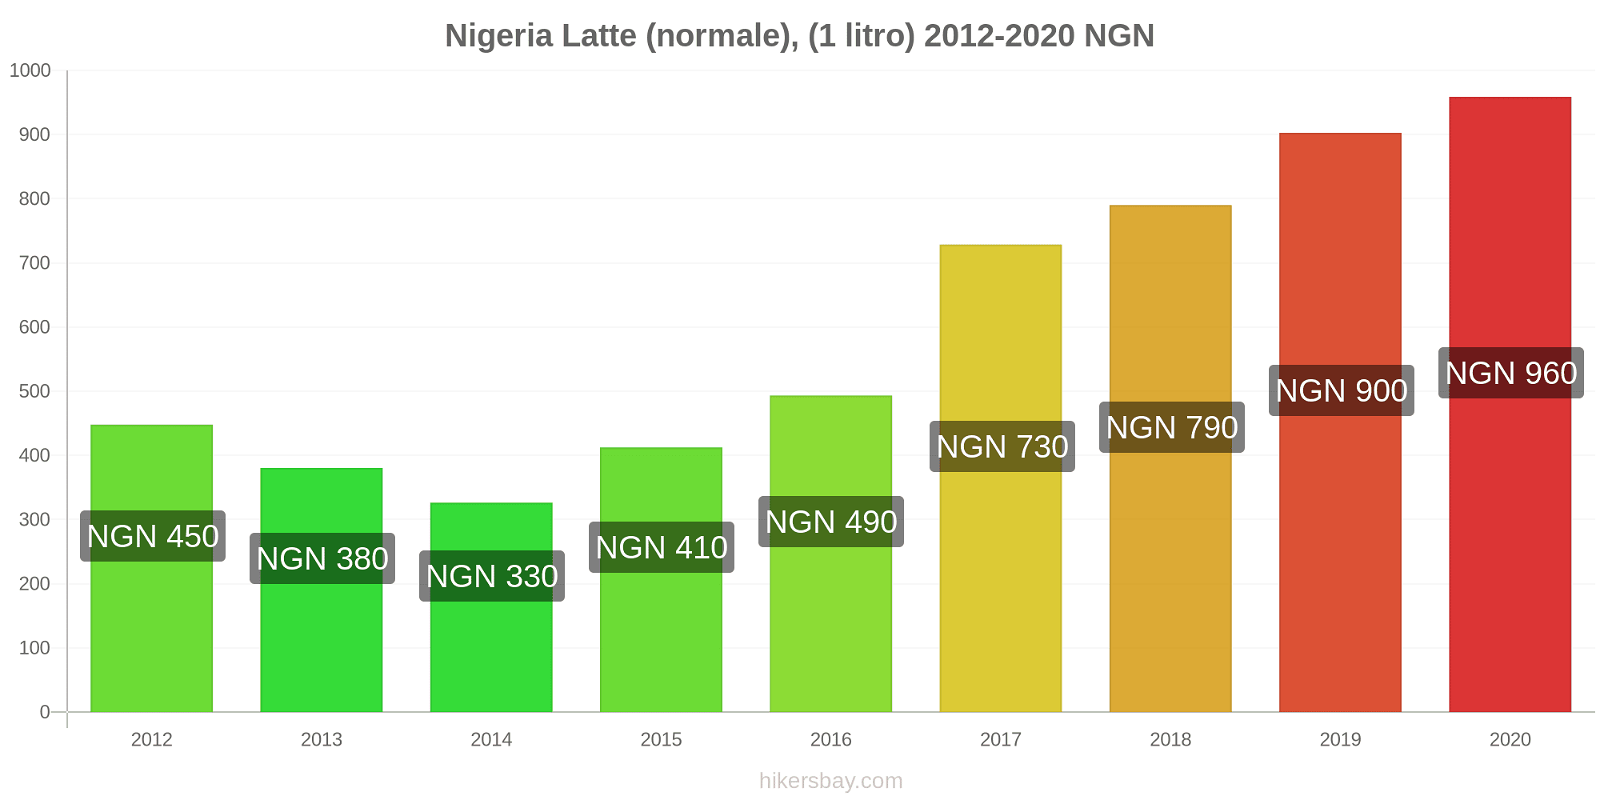 Nigeria variazioni di prezzo Latte (1 litro) hikersbay.com